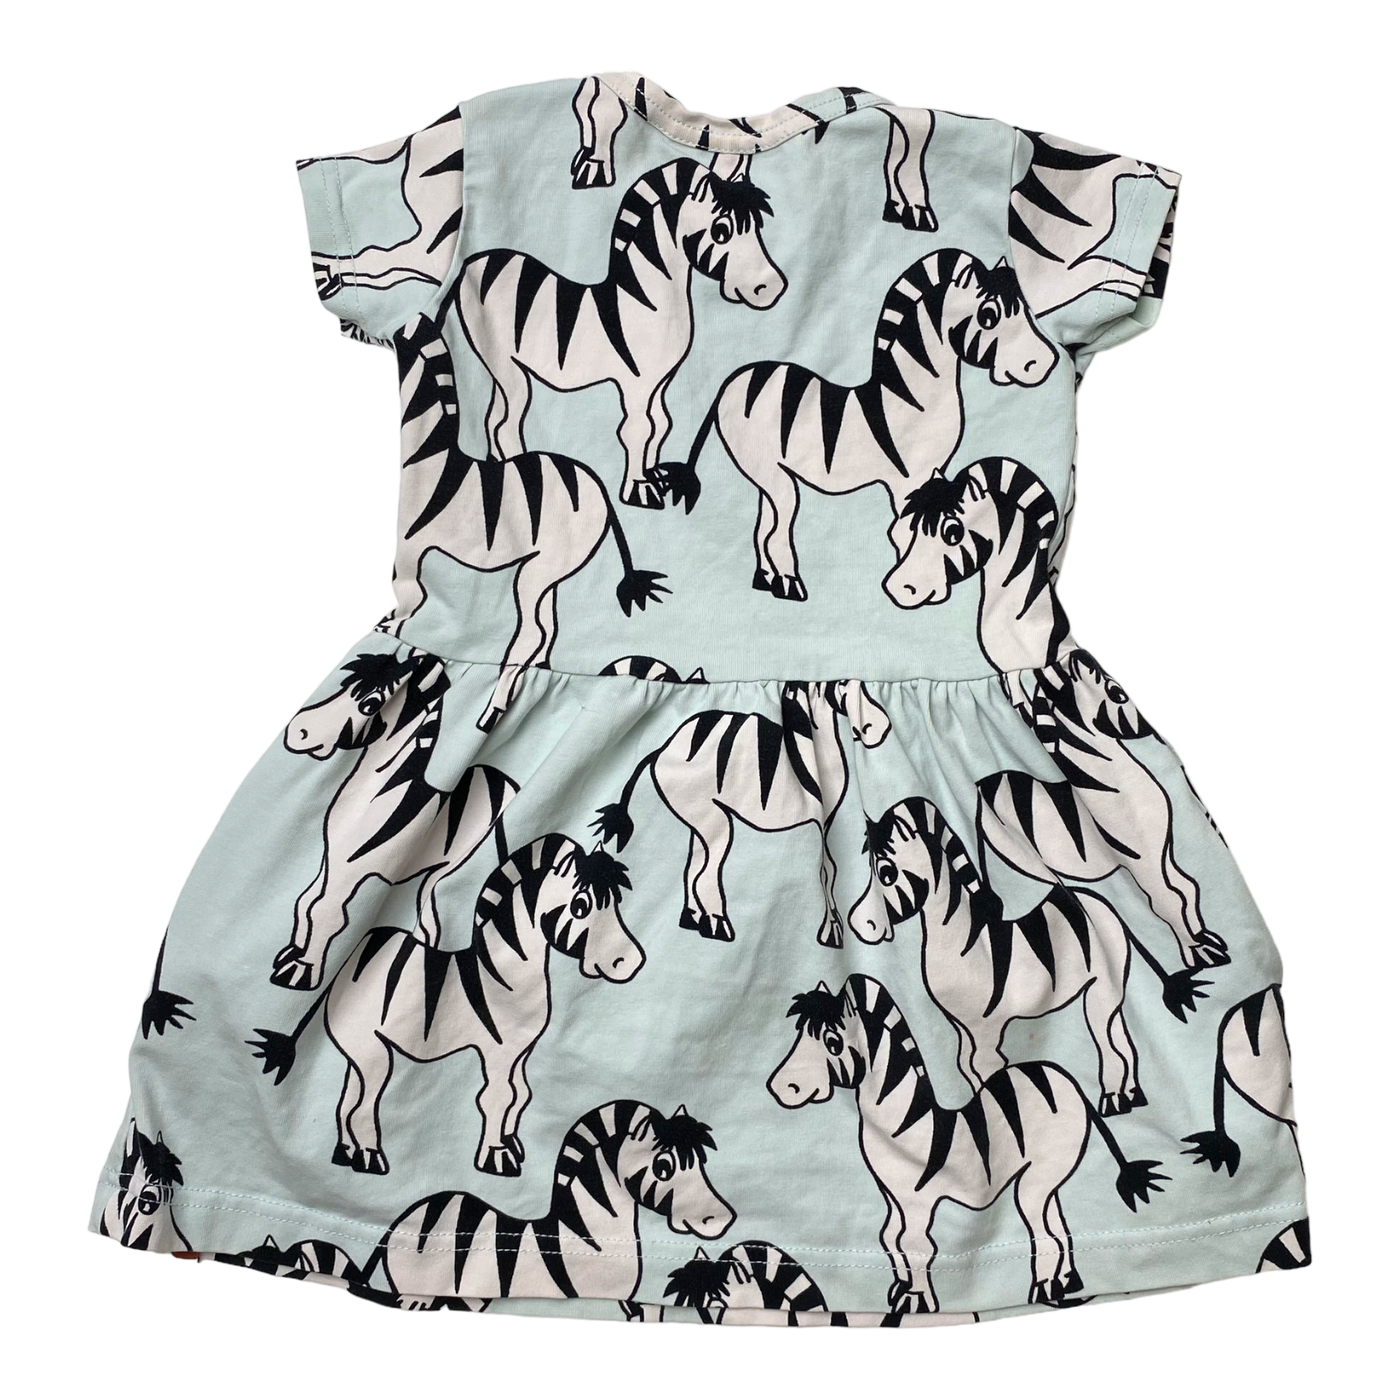 Blaa t-shirt dress, zebra | 74/80cm